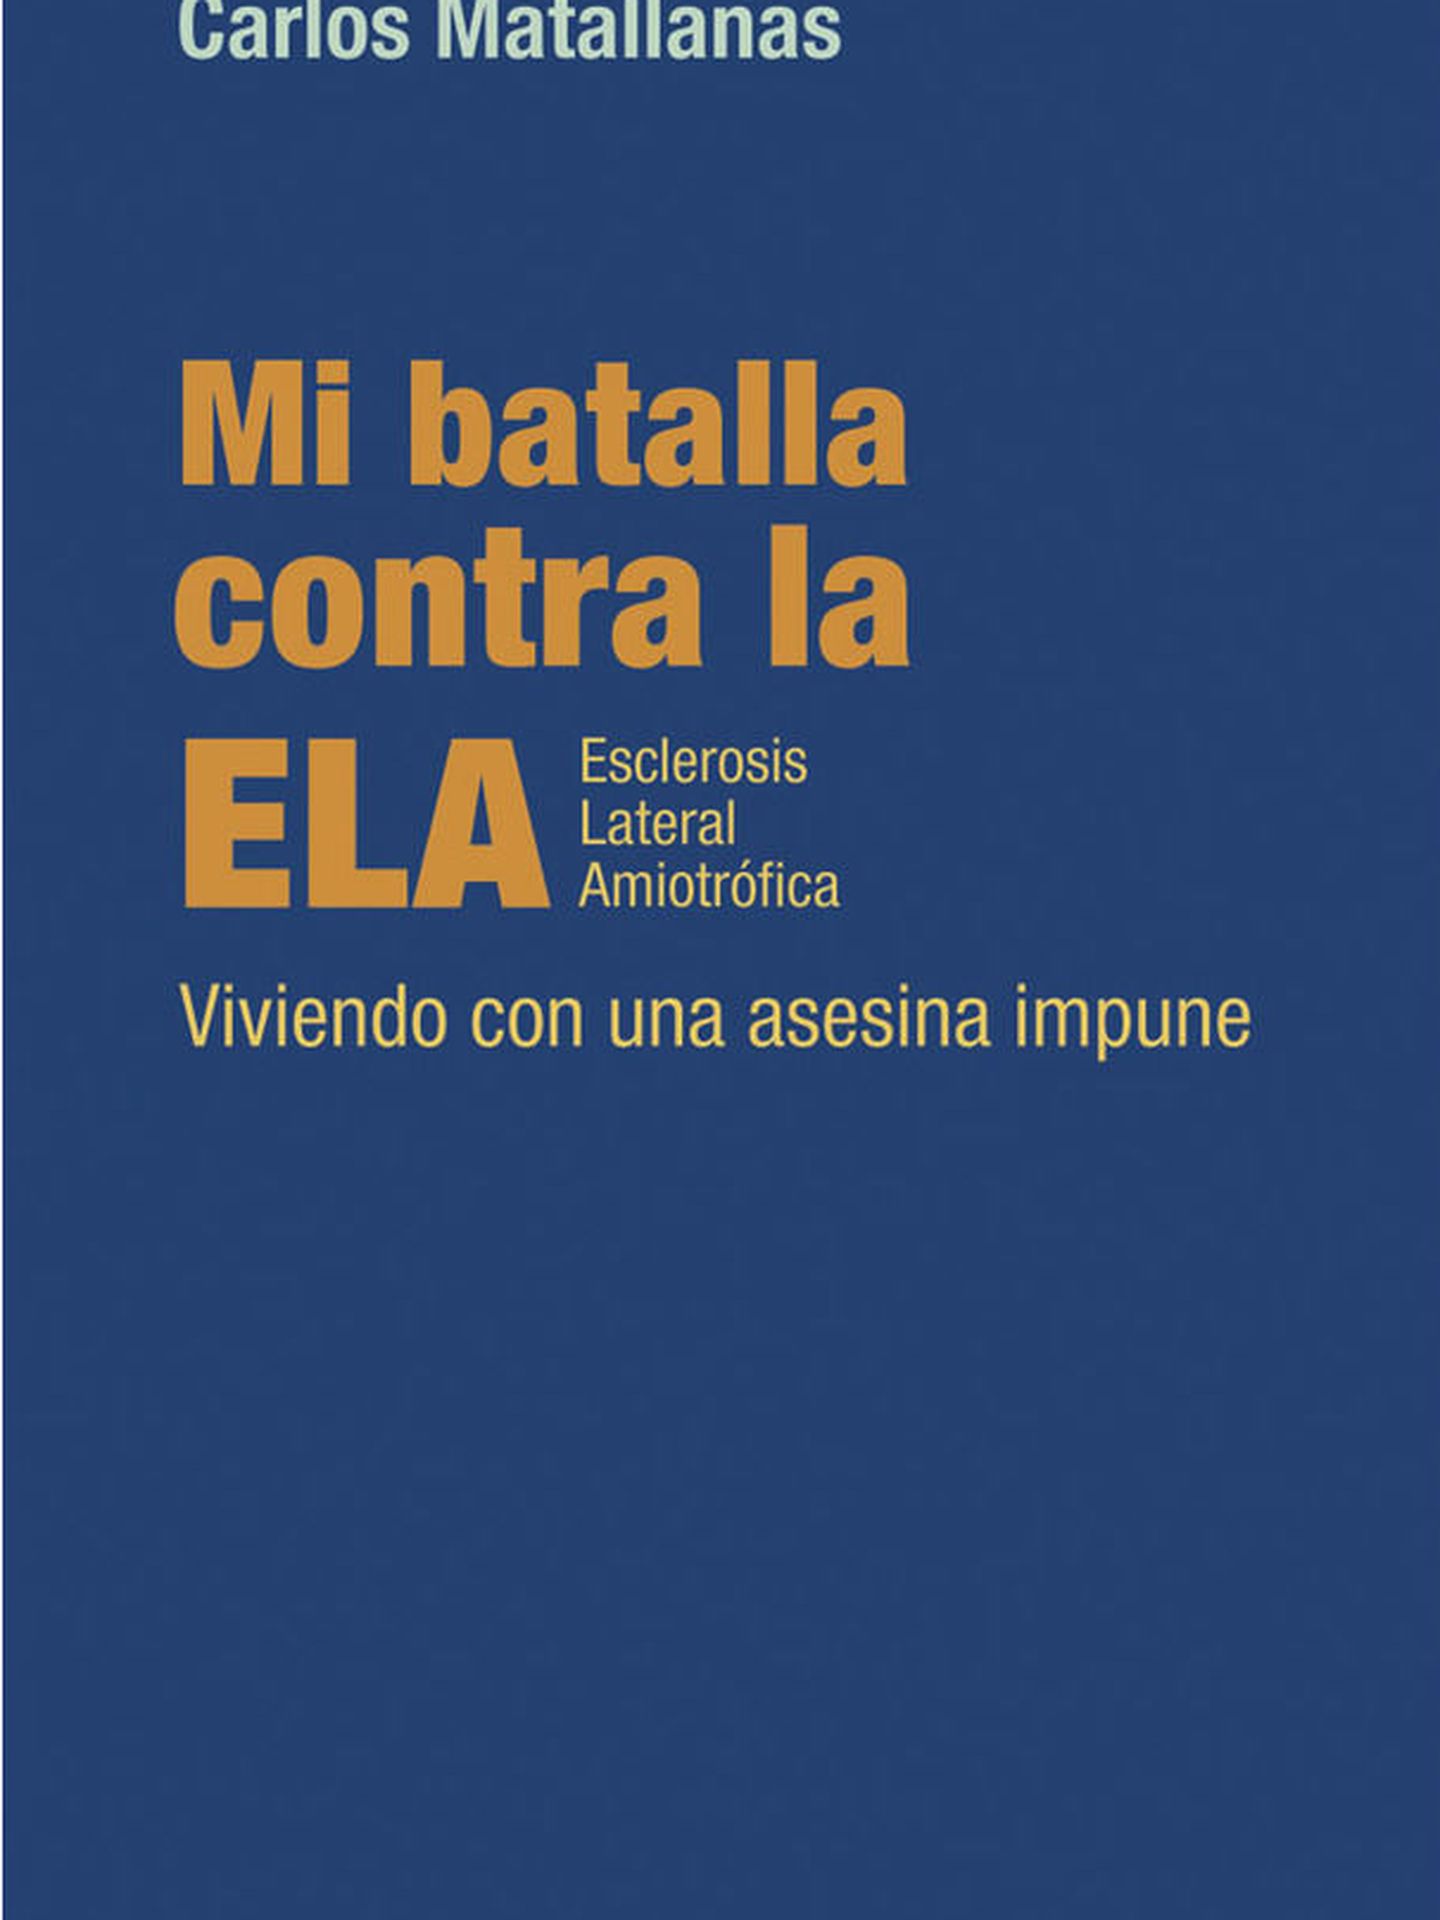 'Mi batalla contra la ELA' de Carlos Matallanas.